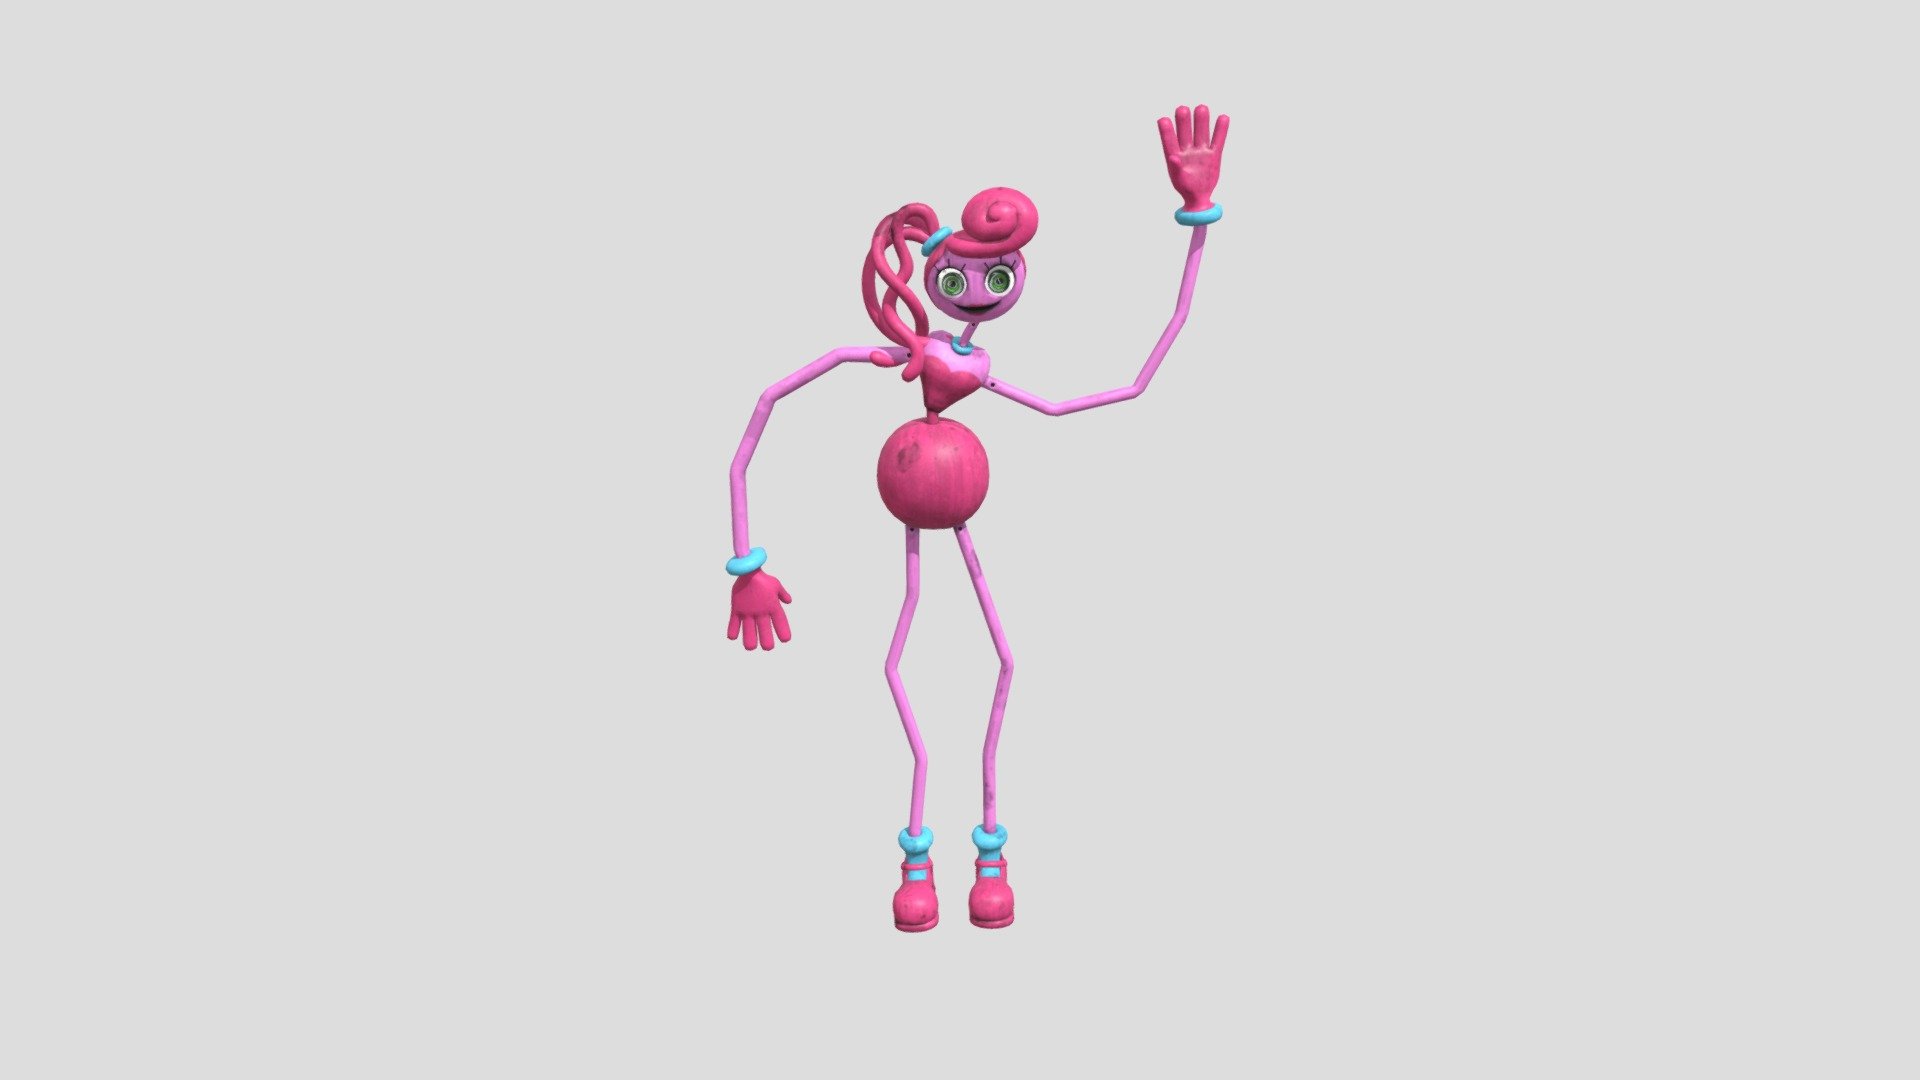 Mommy Long Legs - Download Free 3D model by caduguimacedo (@caduguimacedo)  [d2d830e]